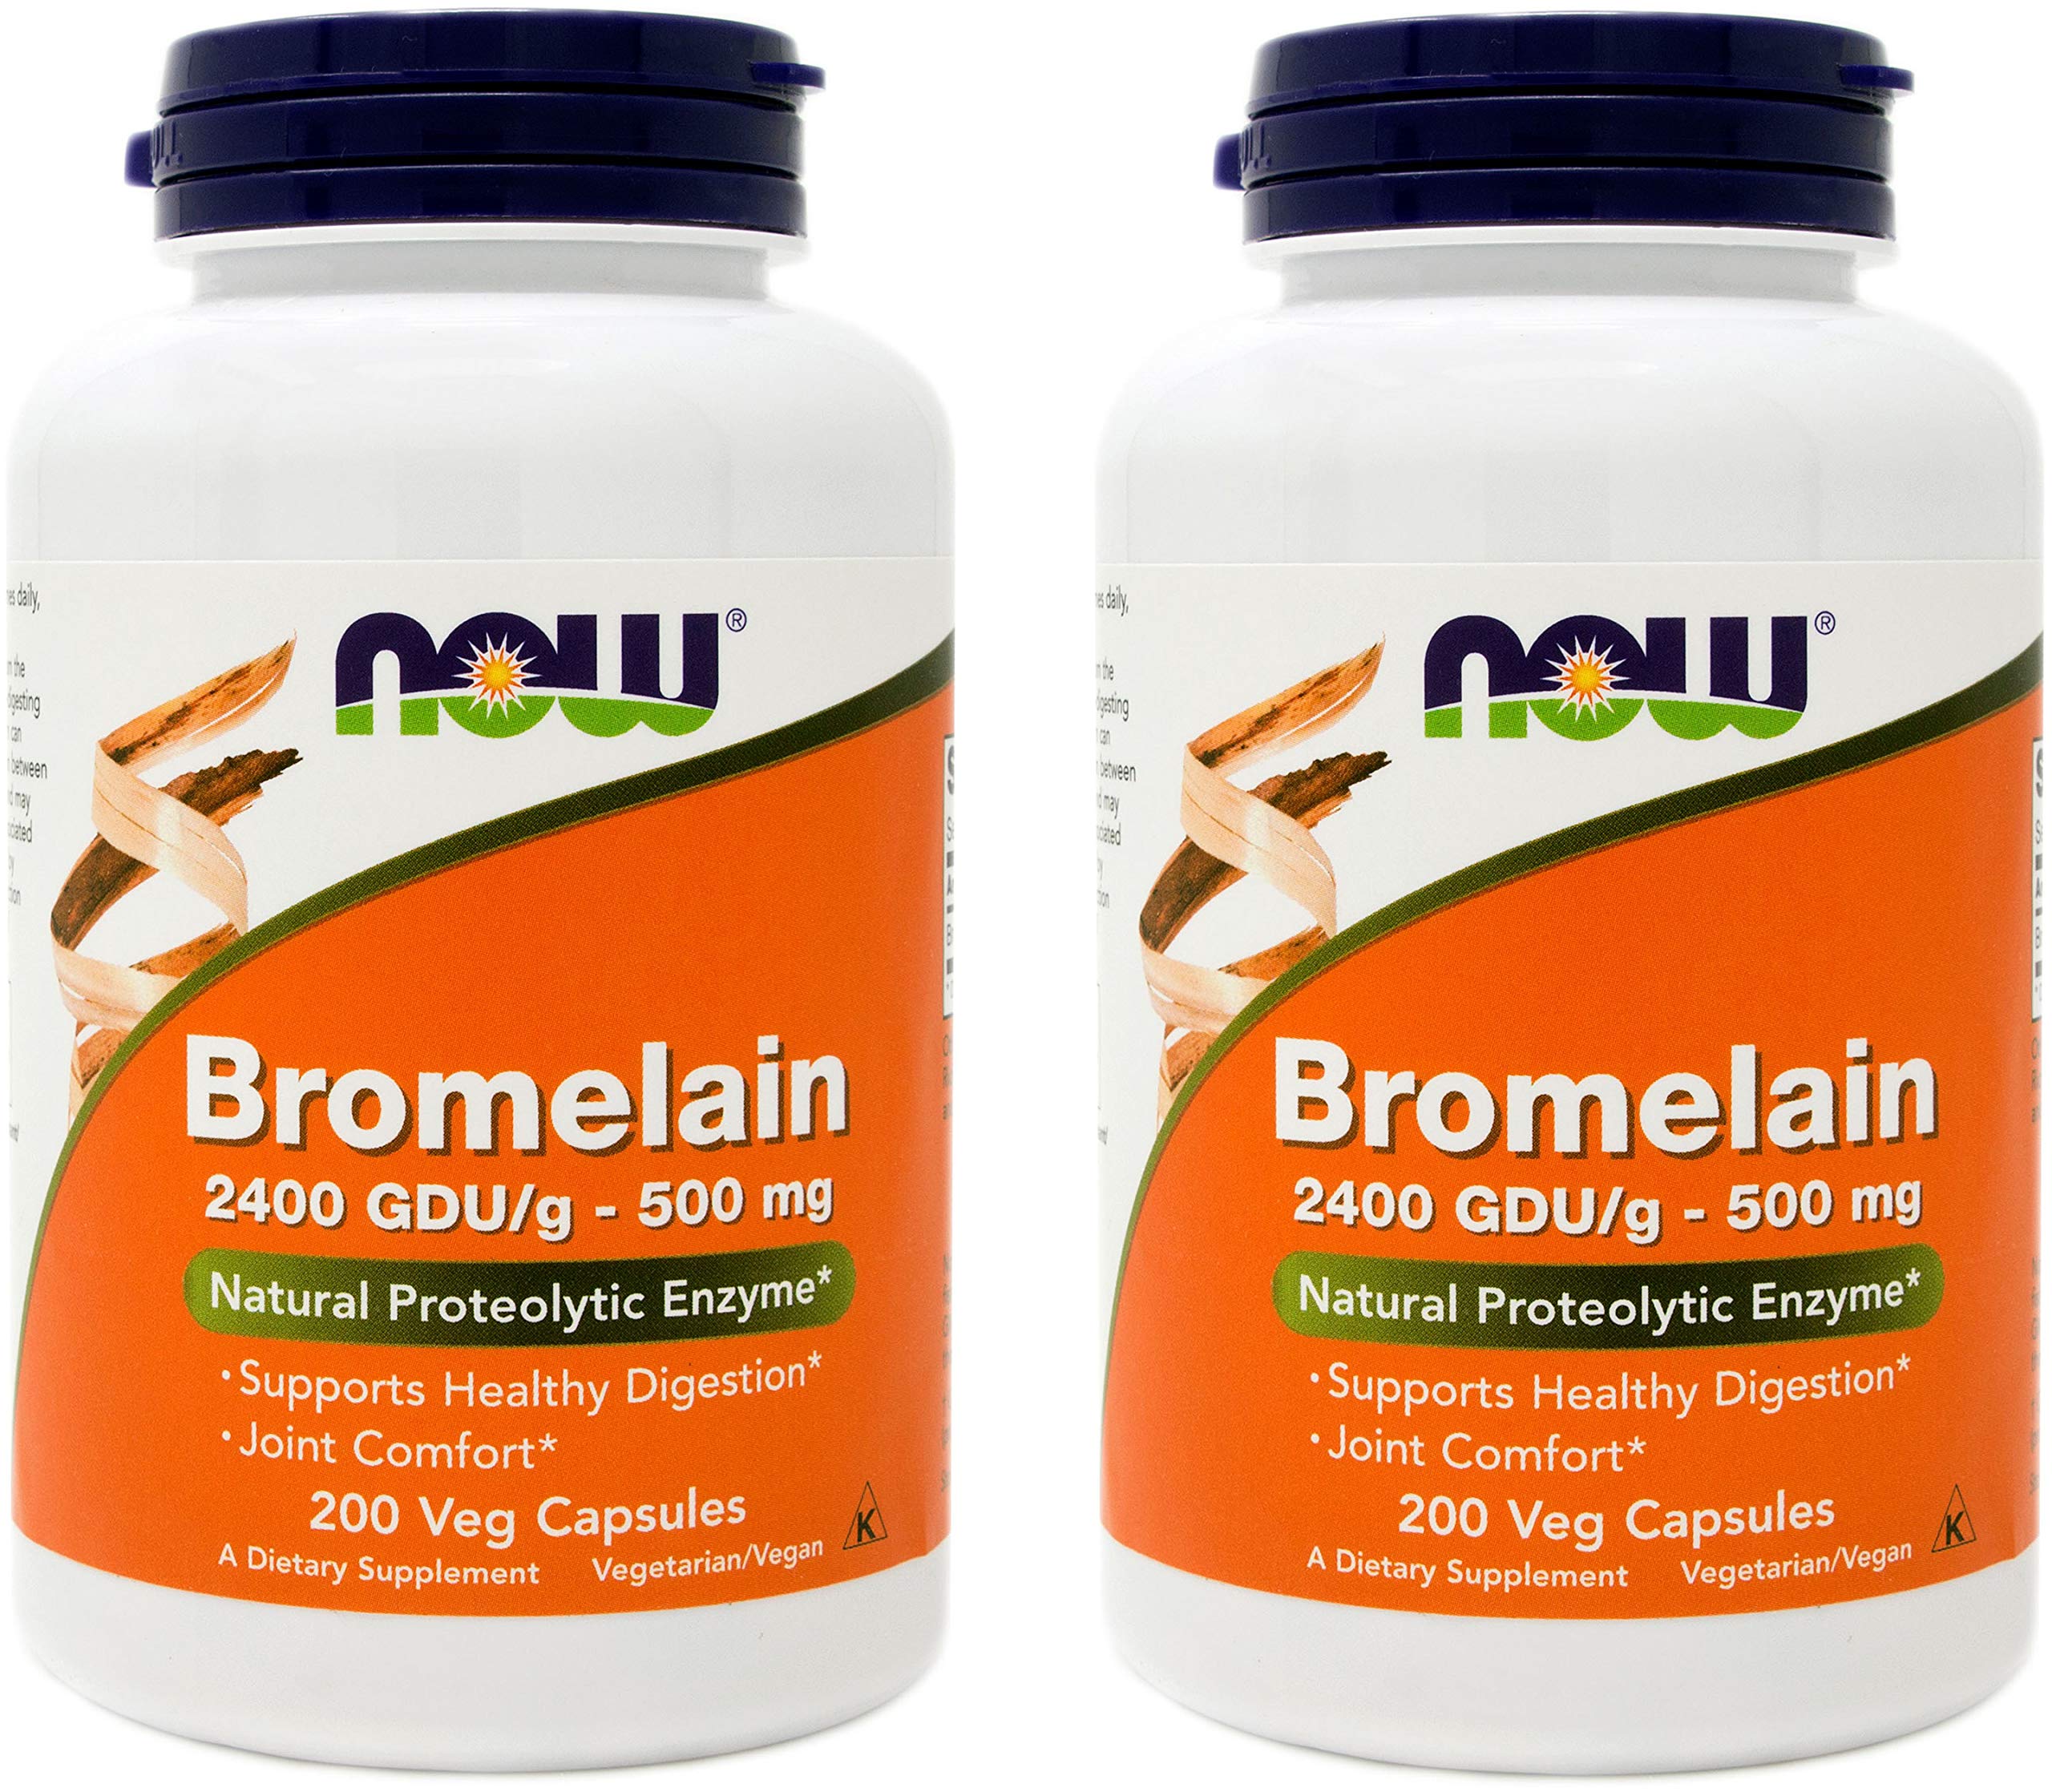 Bromelain Supplements Natures Way vs Now Foods 9862